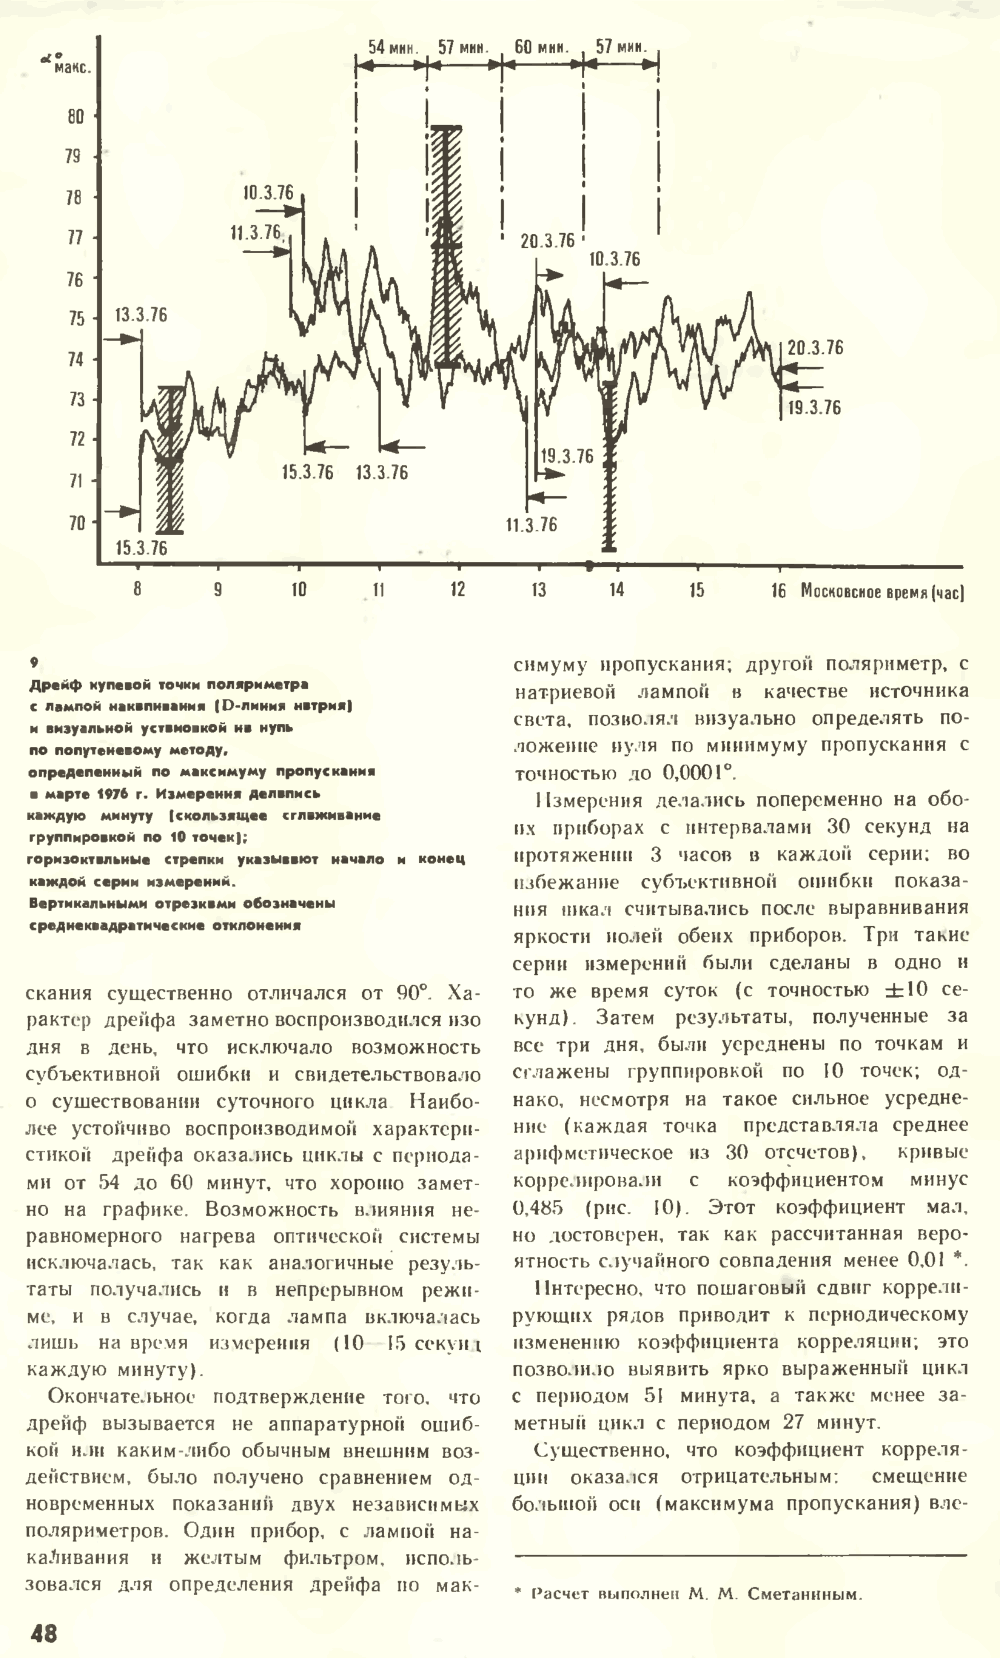 Что нарушает симметрию? В.Е. Жвирблис. Химия и жизнь, 1977, №12, с.42-49. Фотокопия №7